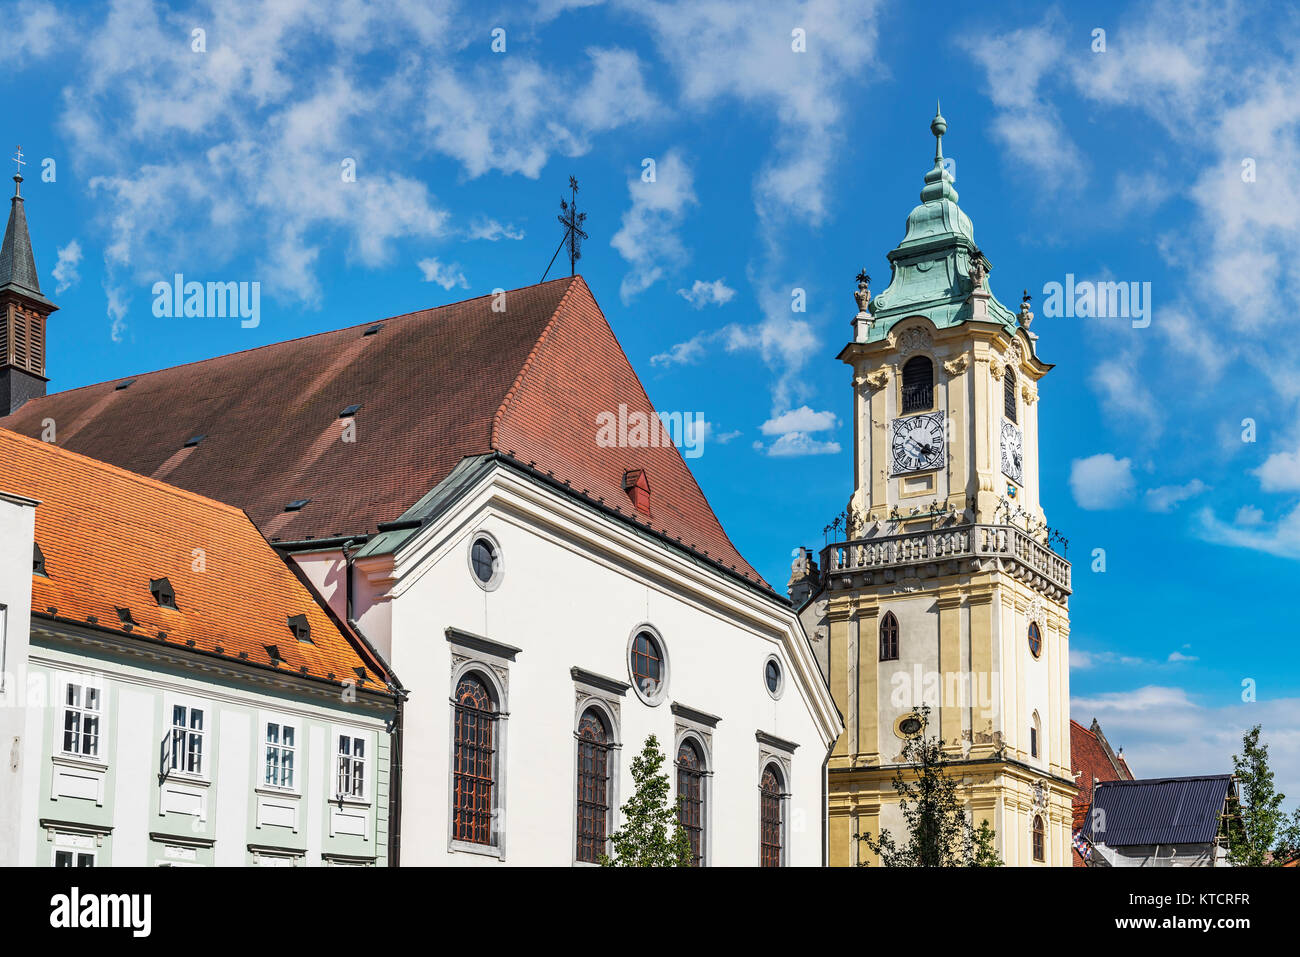 Il municipio della città vecchia è uno degli edifici più antichi della città costruita di pietra. Si trova presso la piazza principale della città vecchia di Bratislava, Slovacchia, Foto Stock